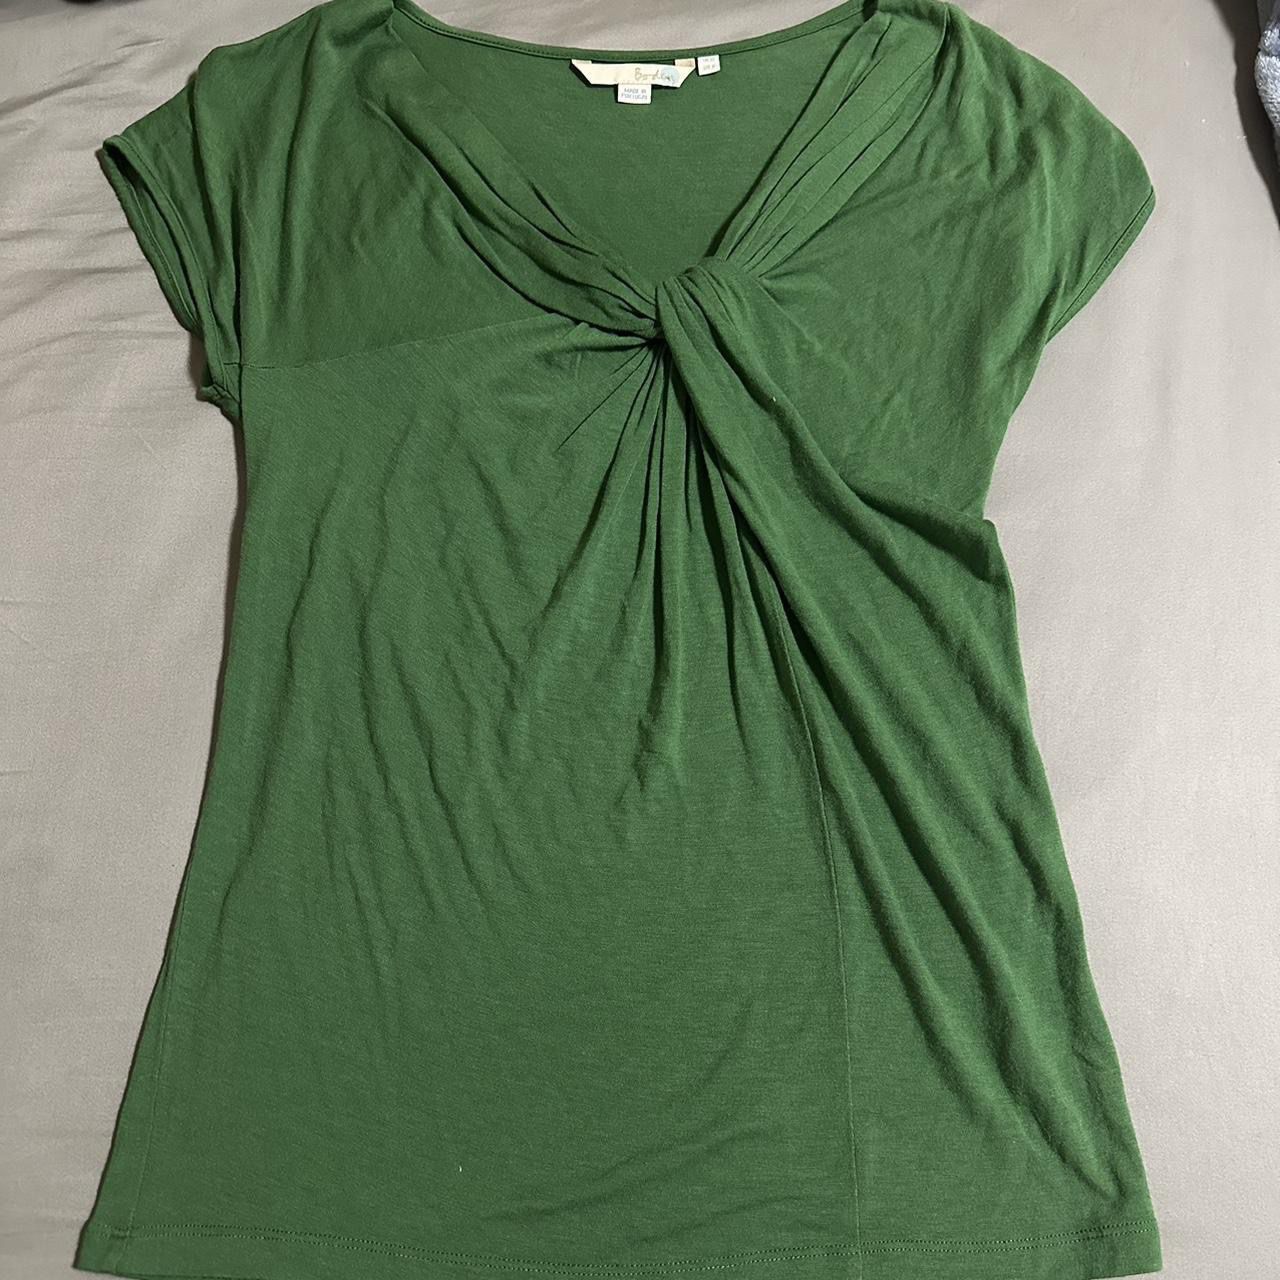 Biden Green Knotted Top Shirt (US 6/UK 10)